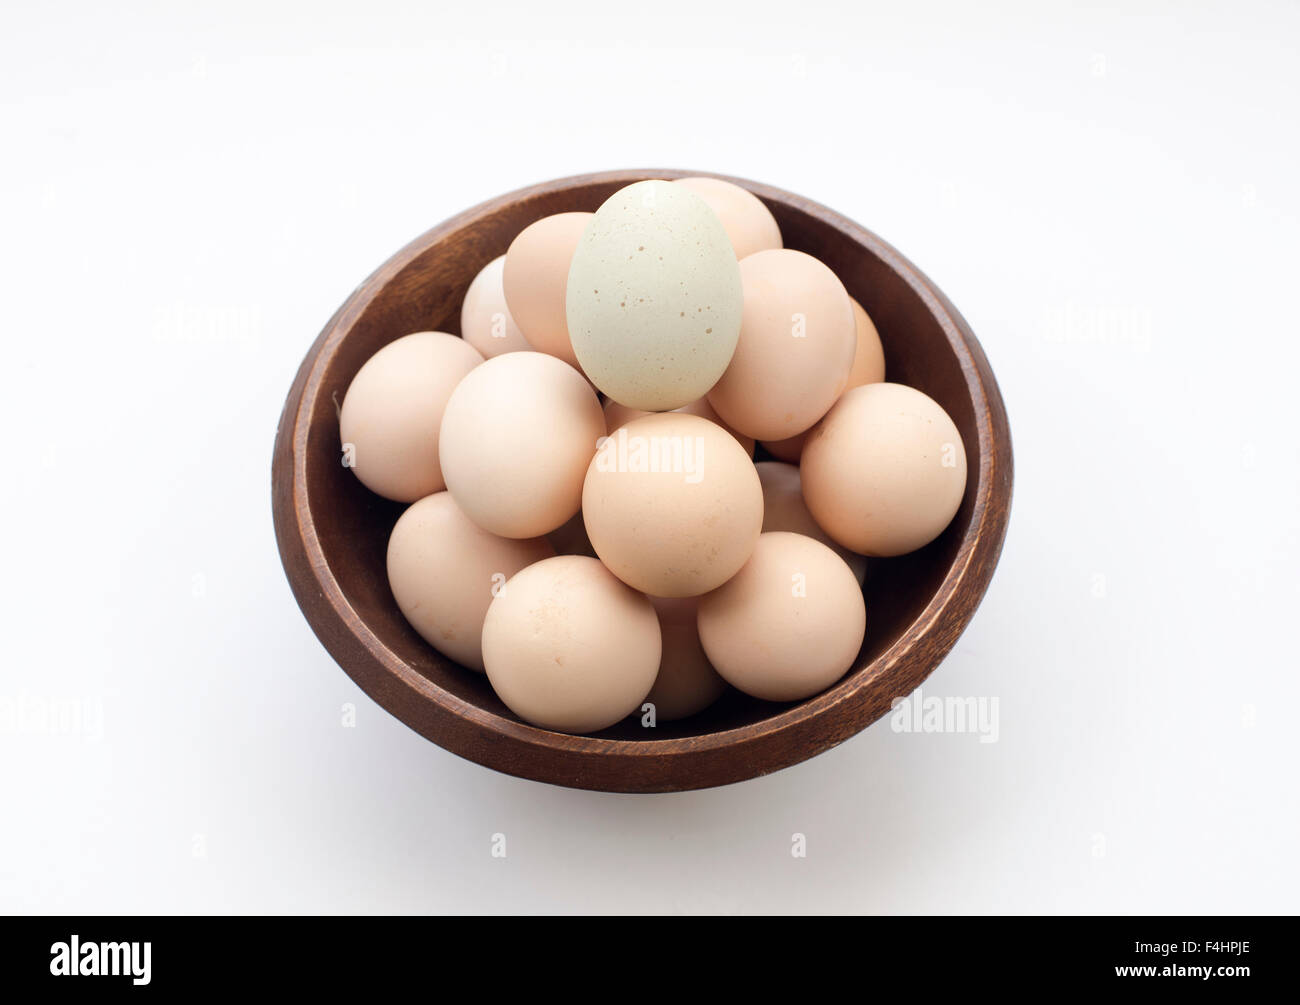 Les œufs. buena salud y alimentacion. La bonne nourriture Banque D'Images